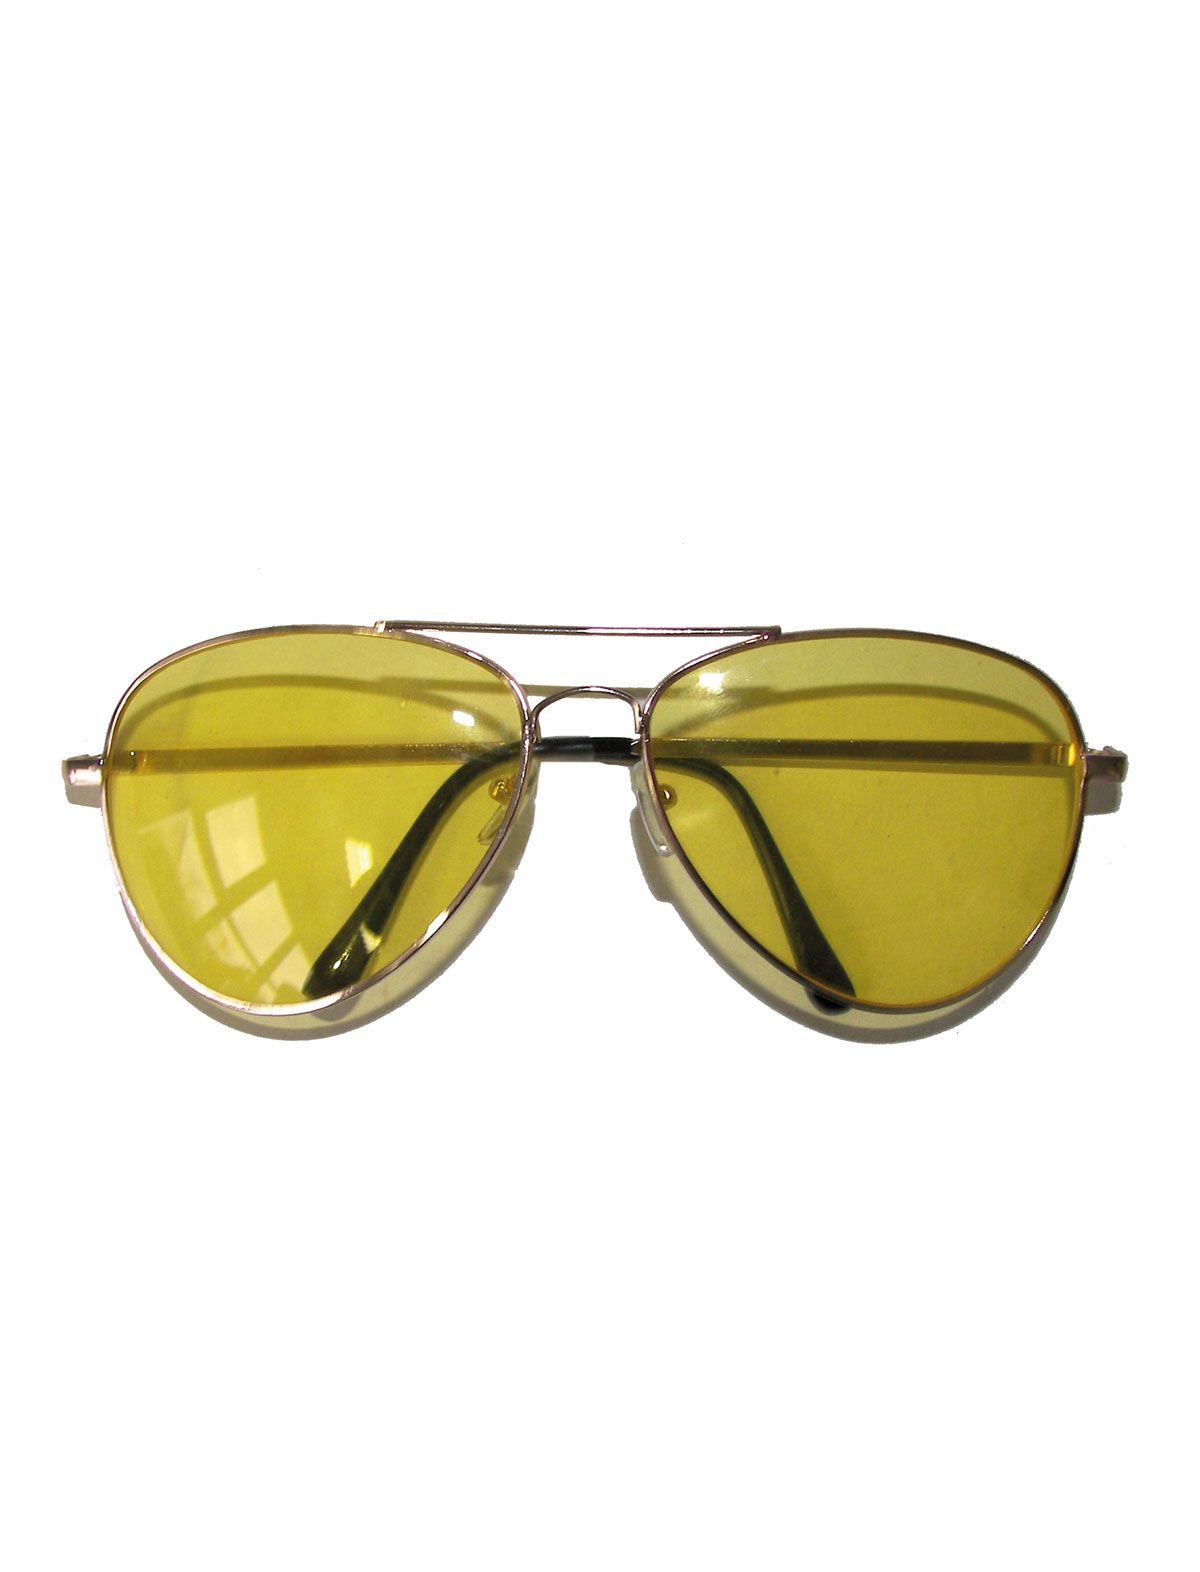 verkoop - attributen - Brillen - Pilotenbril Snelle Eddy